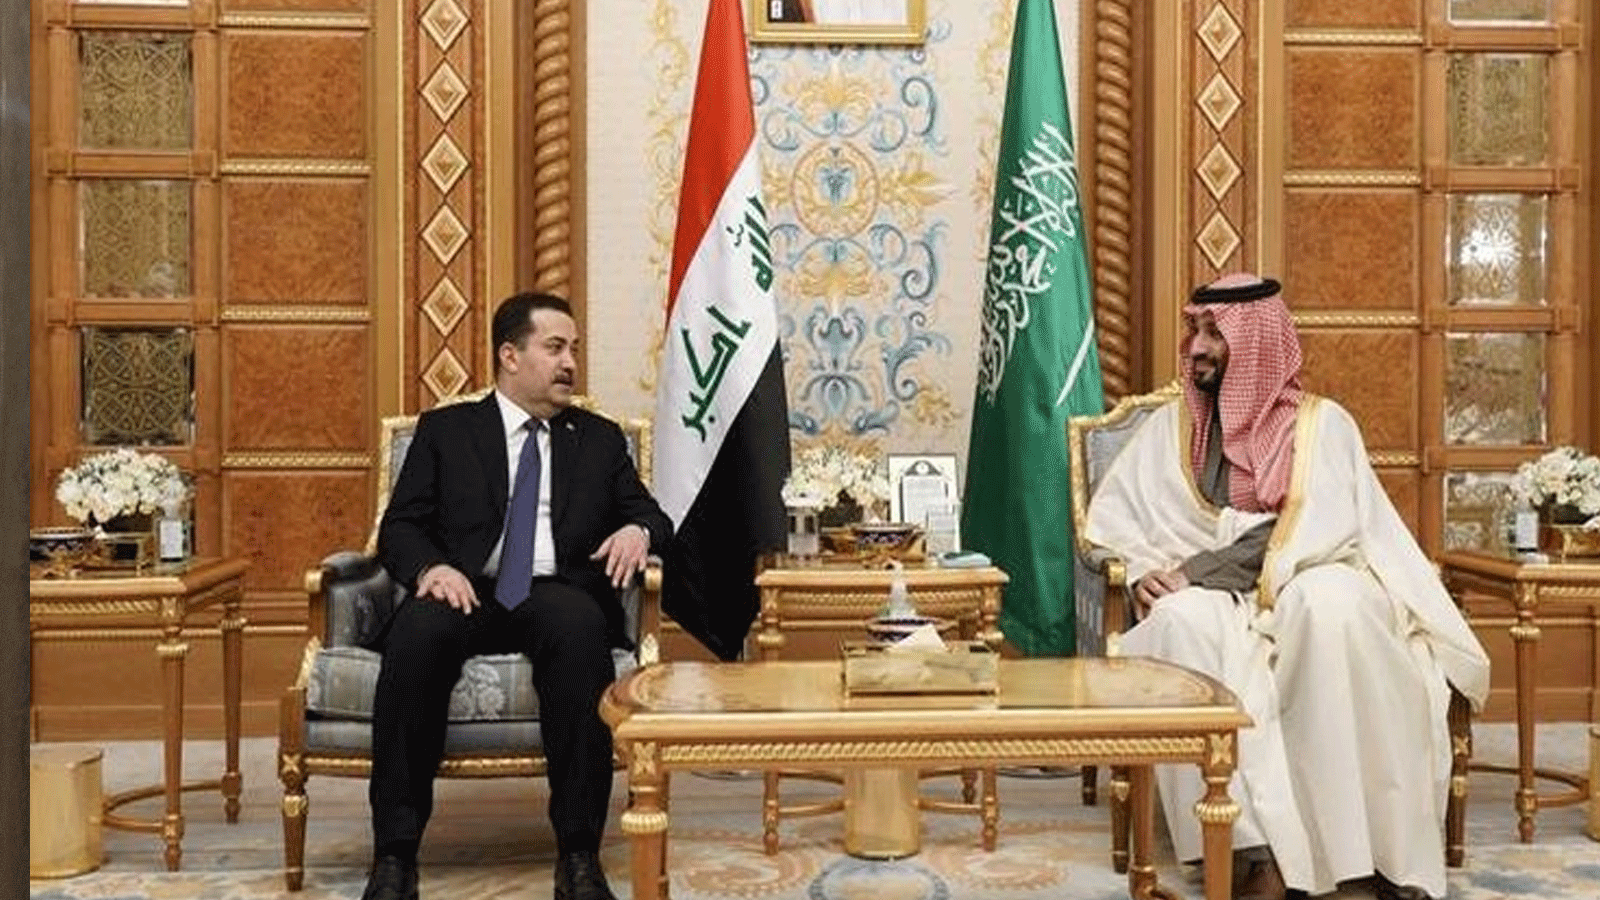 السوداني مجتمعا في الرياض مع ولي العهد السعودي الامير محمد بن سلمان خلال القمة العربية الصينية التي انعقدت هناك في 10 كانون الأول\ديسمبر 2022 (مكتبه)